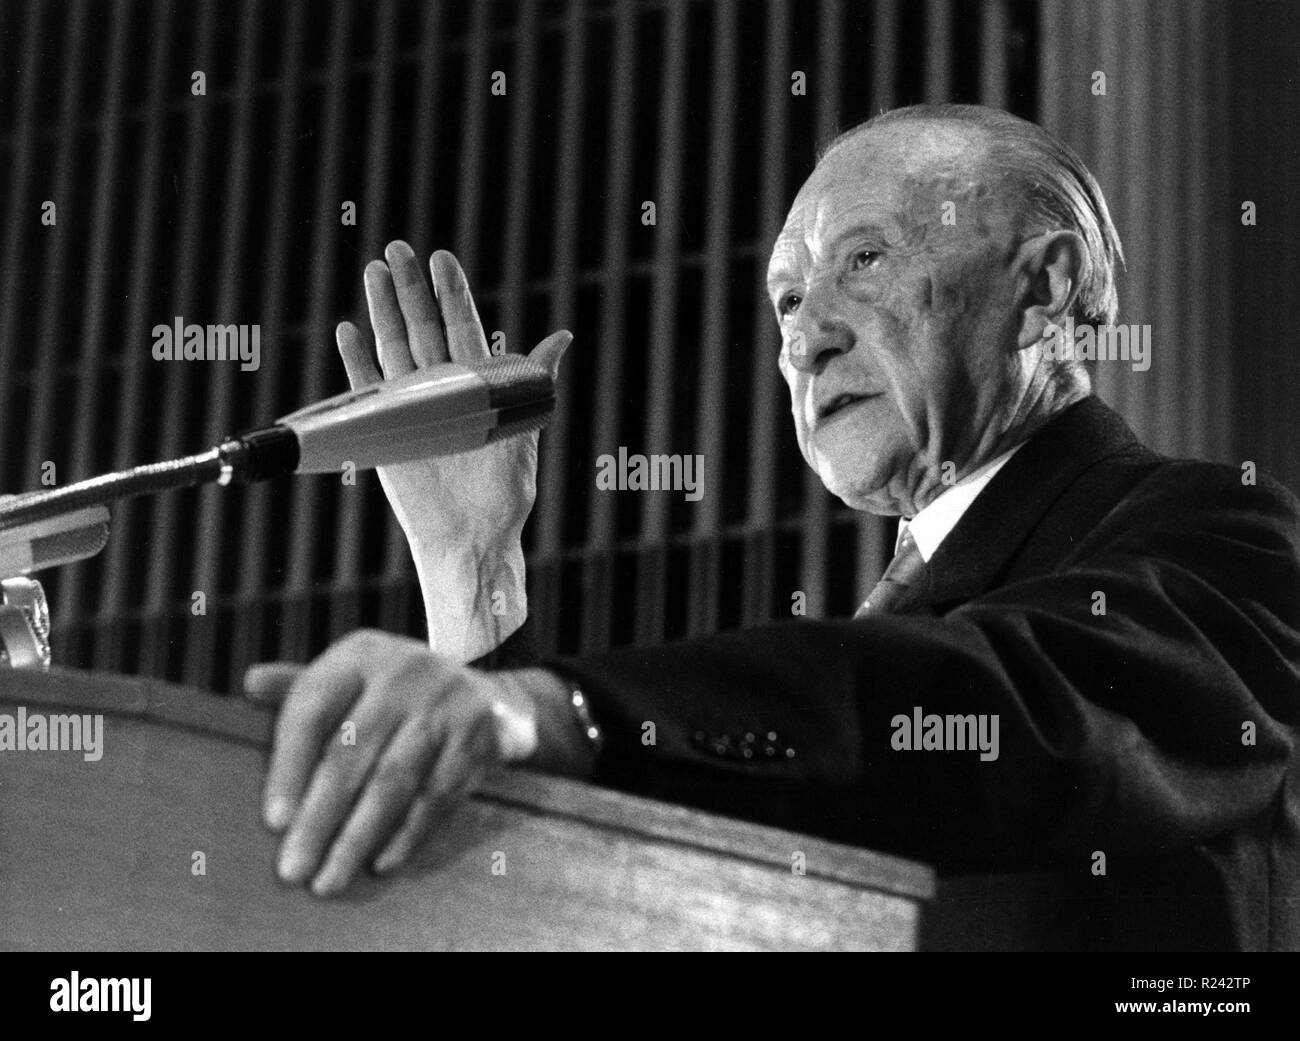 Konrad Adenauer Hermann Josef était un homme d'État allemand. En tant que premier chancelier de l'après-guerre de l'Allemagne de 1949 à 1963, il a conduit son pays dans les ruines de la Seconde Guerre mondiale Banque D'Images